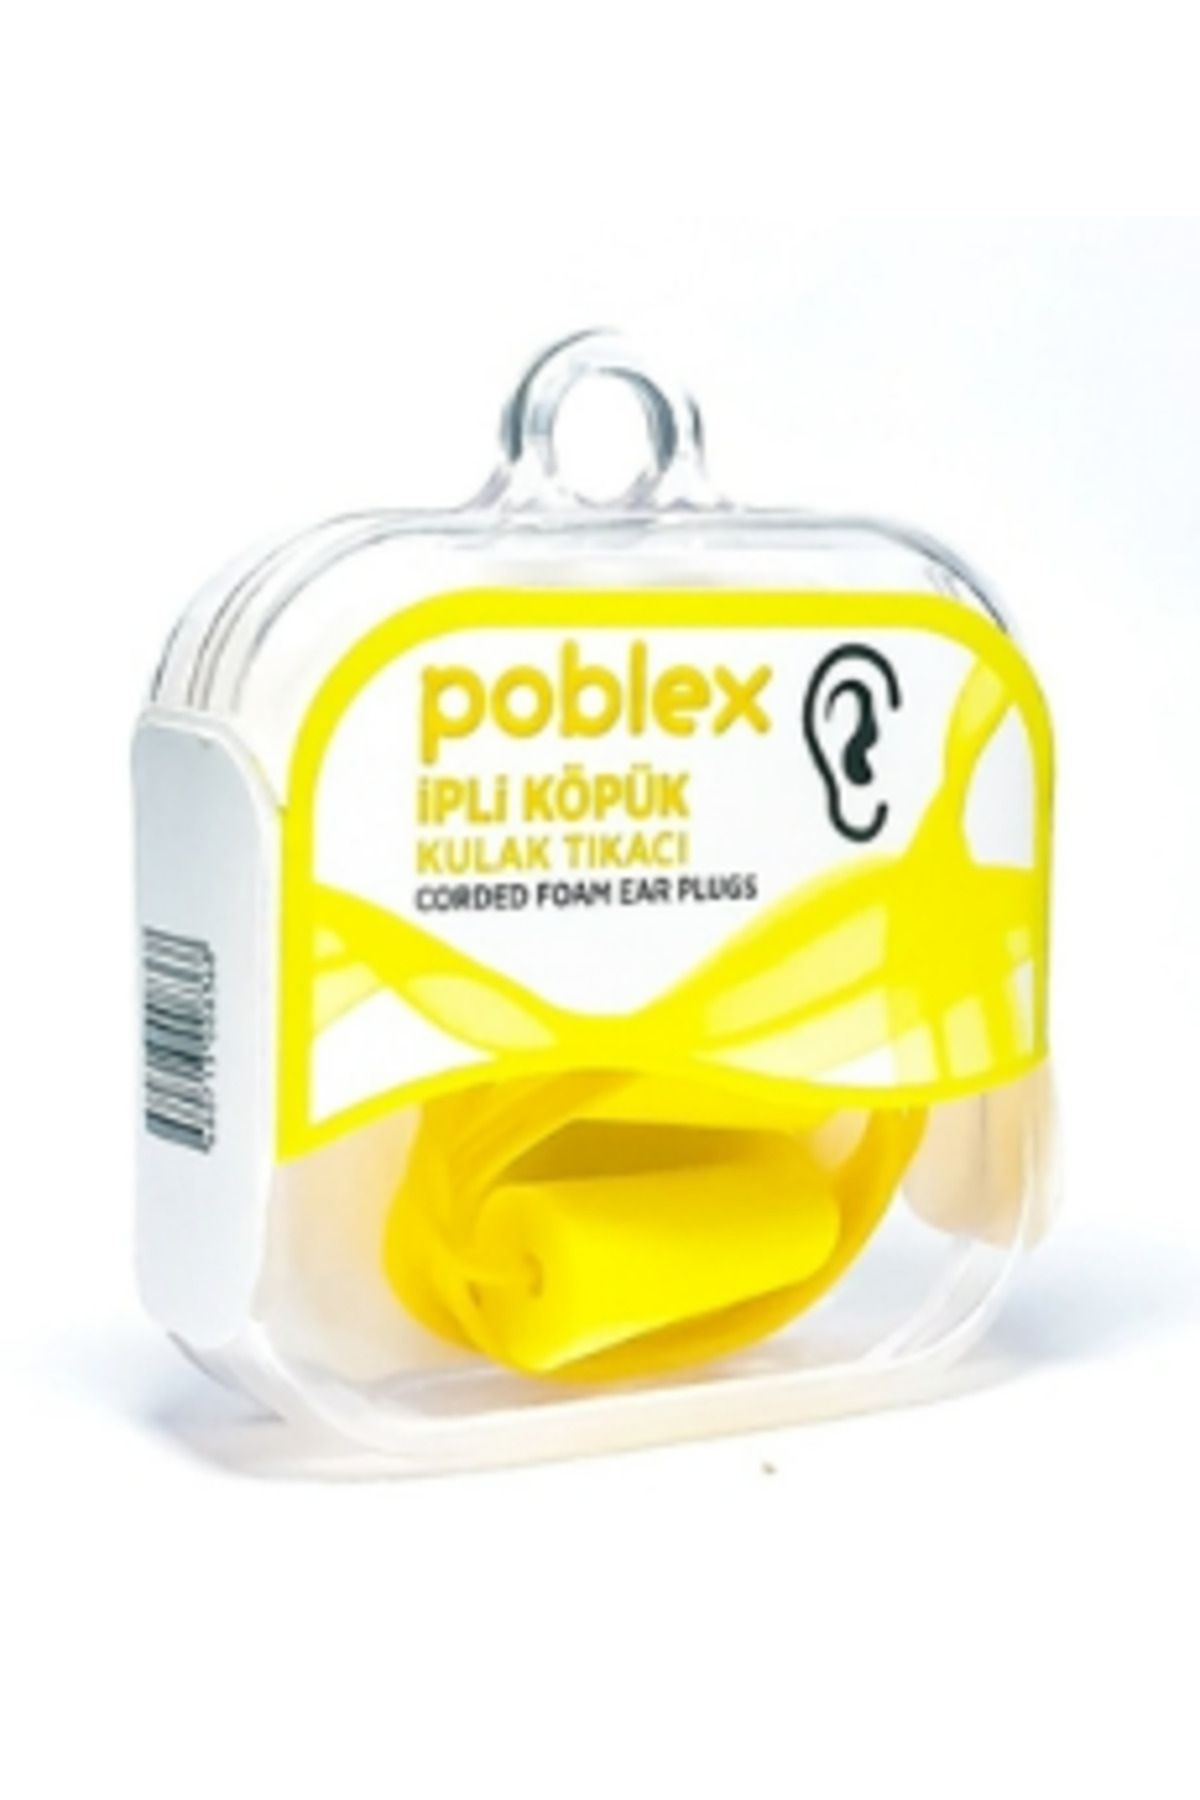 Poblex İpli Köpük Kulak Tıkacı ( 1 ADET )